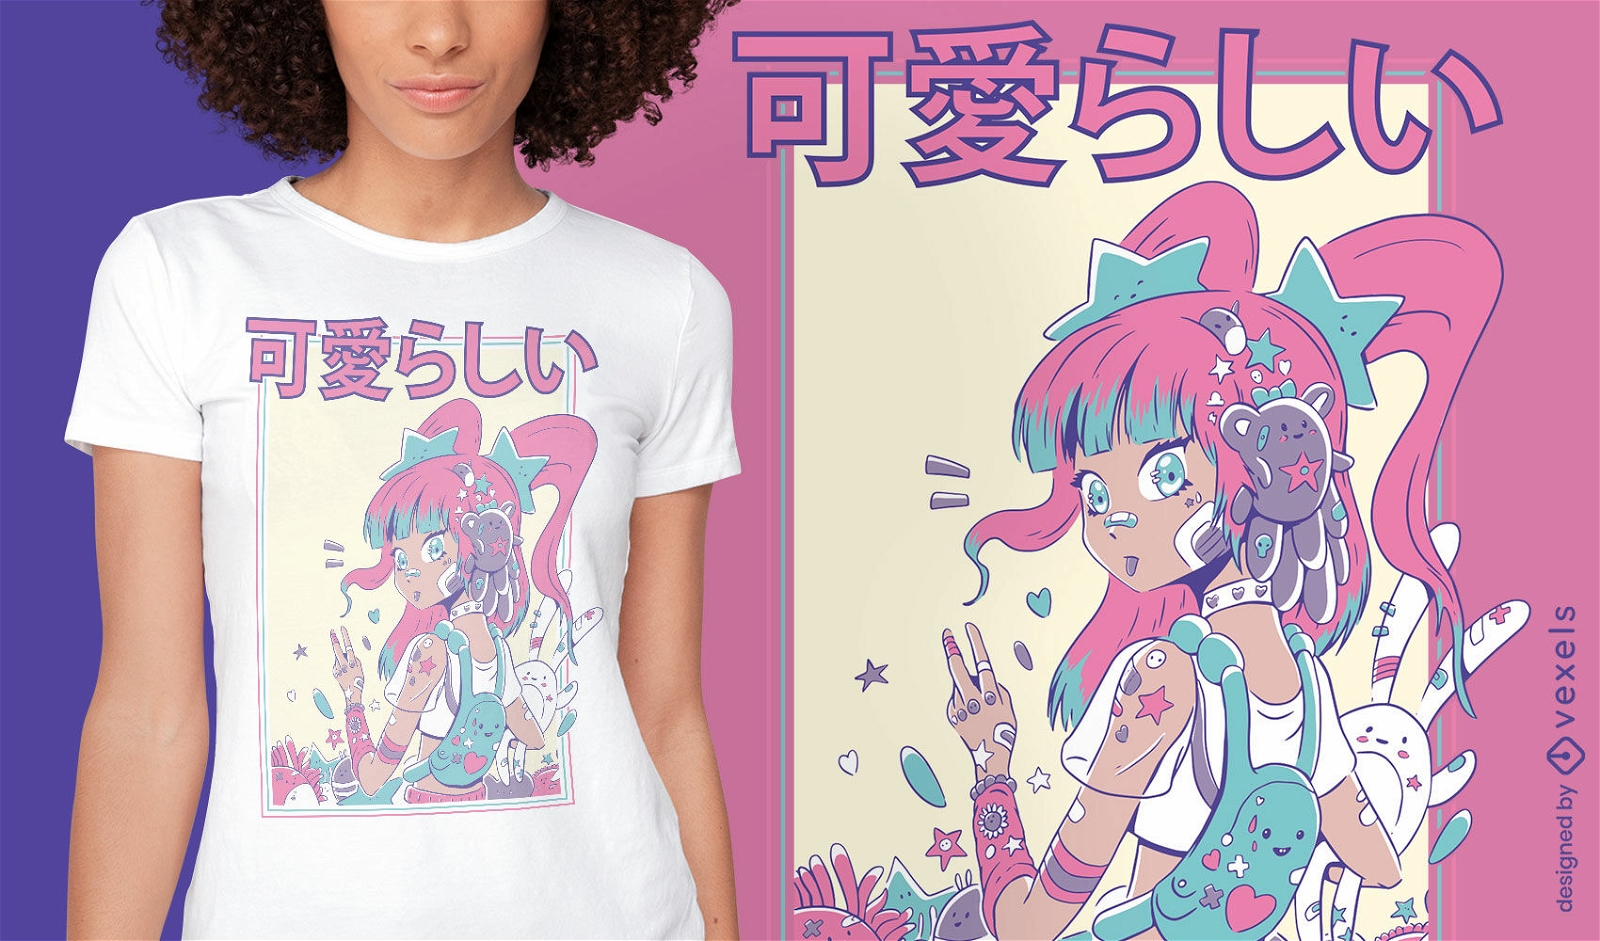 Nettes Anime-M?dchen mit Pl?schspielzeug-T-Shirt-Design